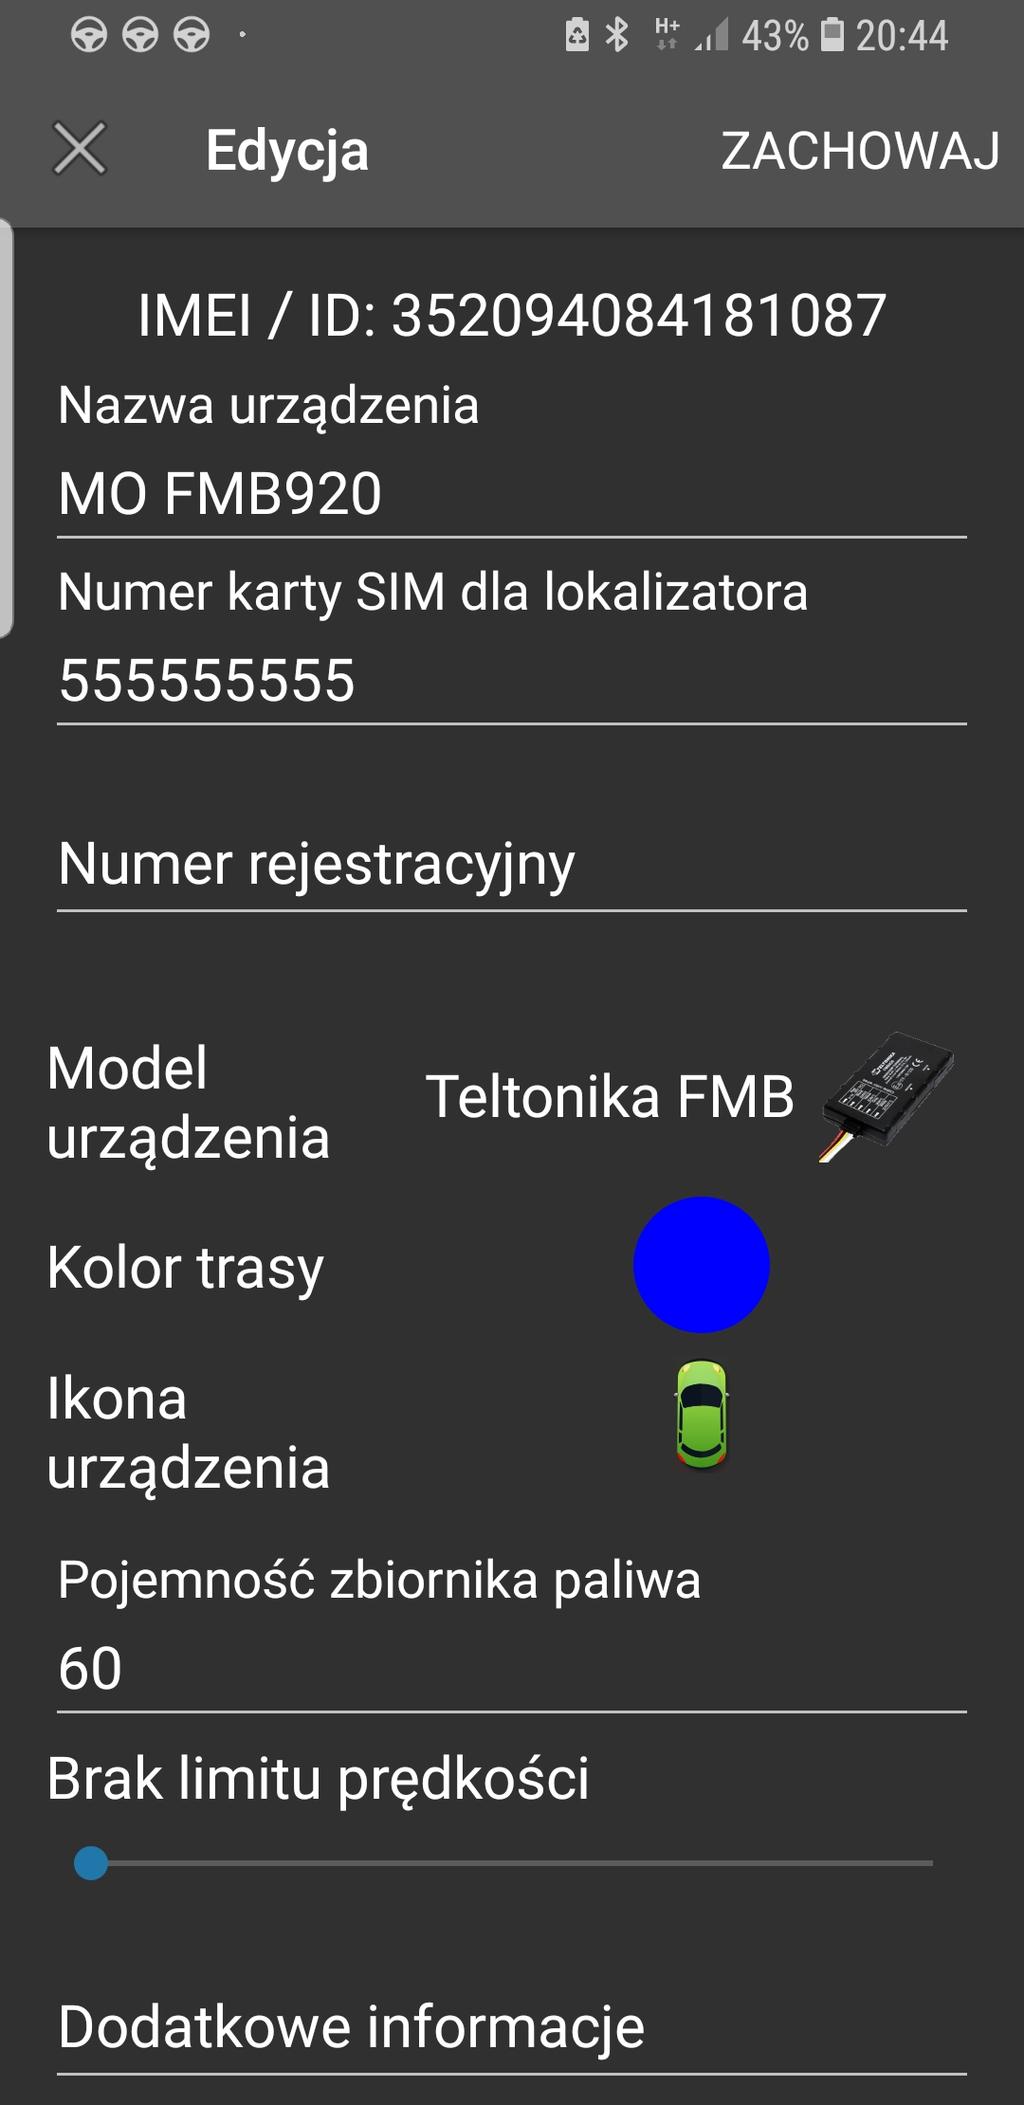 Wpisz nazwę lokalizatora Wprowadź numer telefoniczny karty SIM zamontowanej w lokalizatorze Opcjonalnie podaj numer rejestracyjny